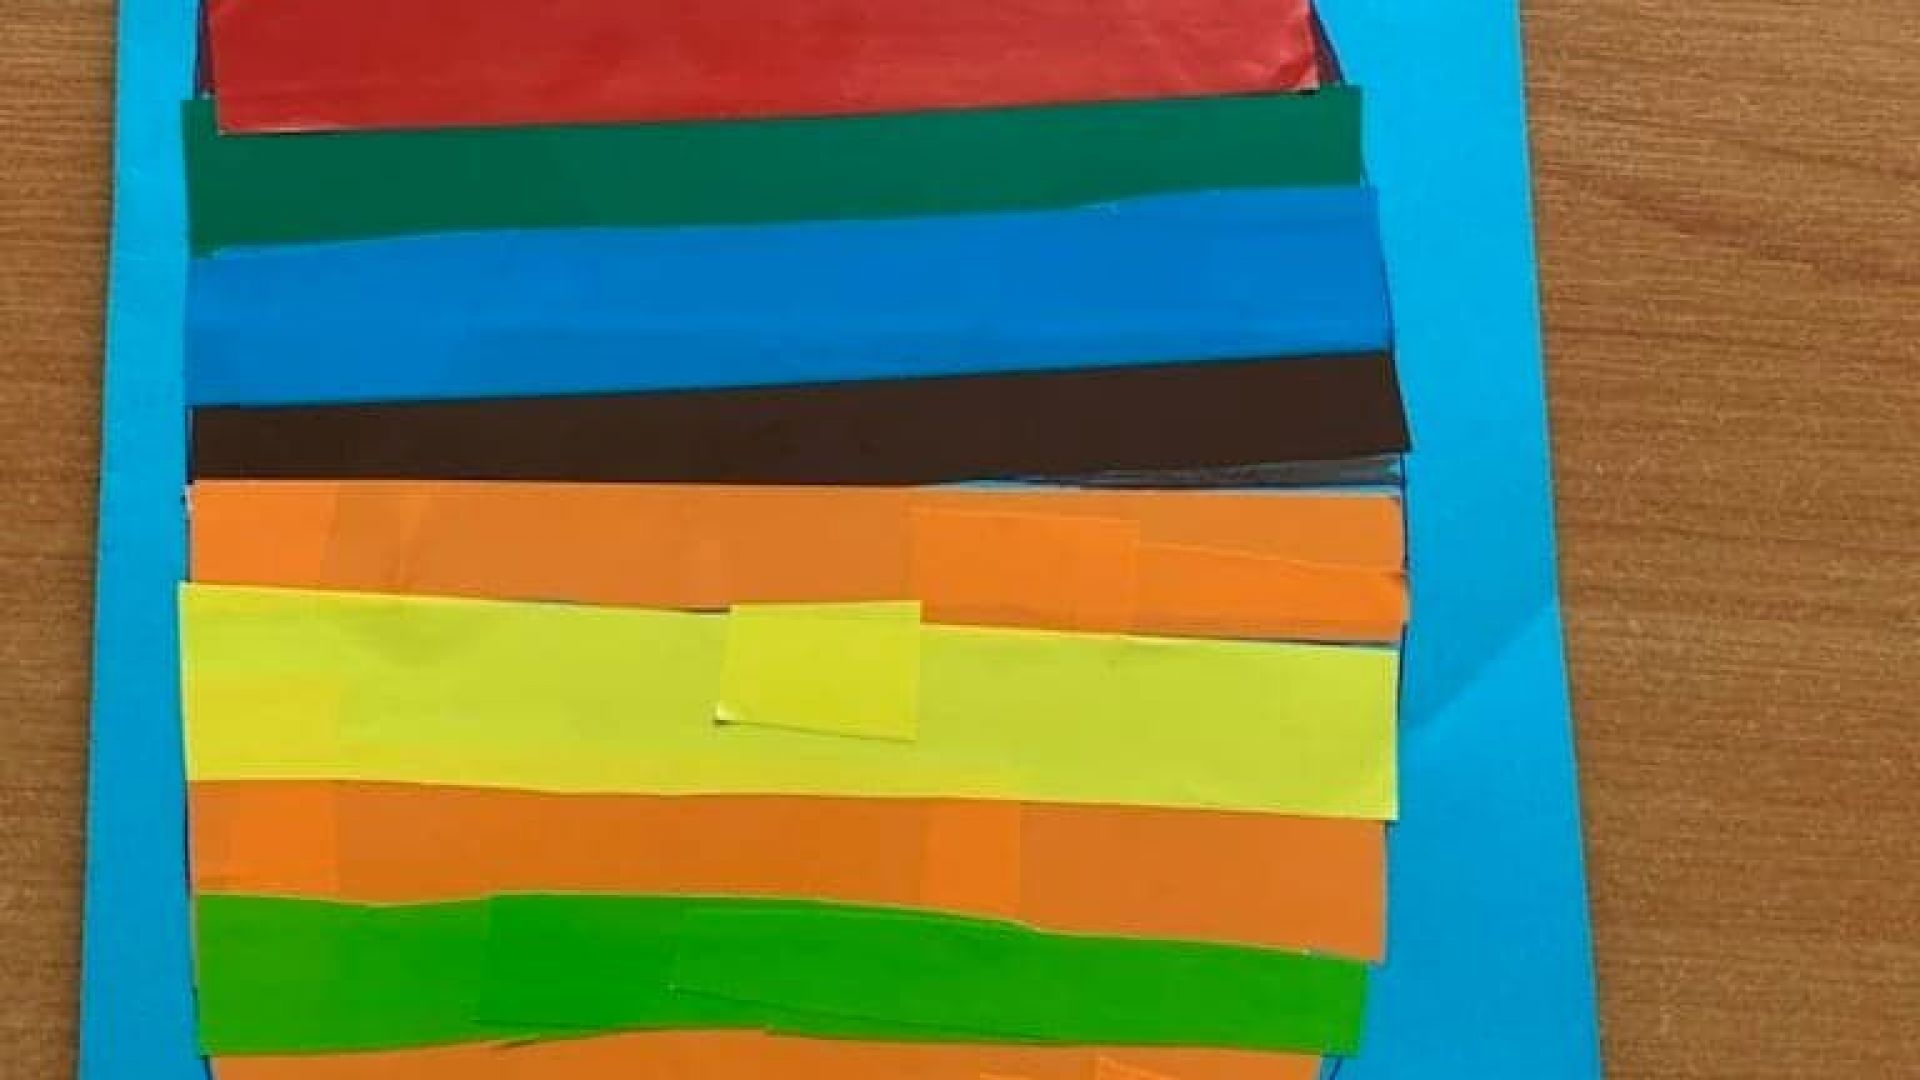 Wielkanocna kartka przedstawiająca dużą pisankę w kolorowe paski przyklejone z papieru kolorowego, na niebieskim tle, z napisem pisanka wielkanocna. Autor: Paweł K.